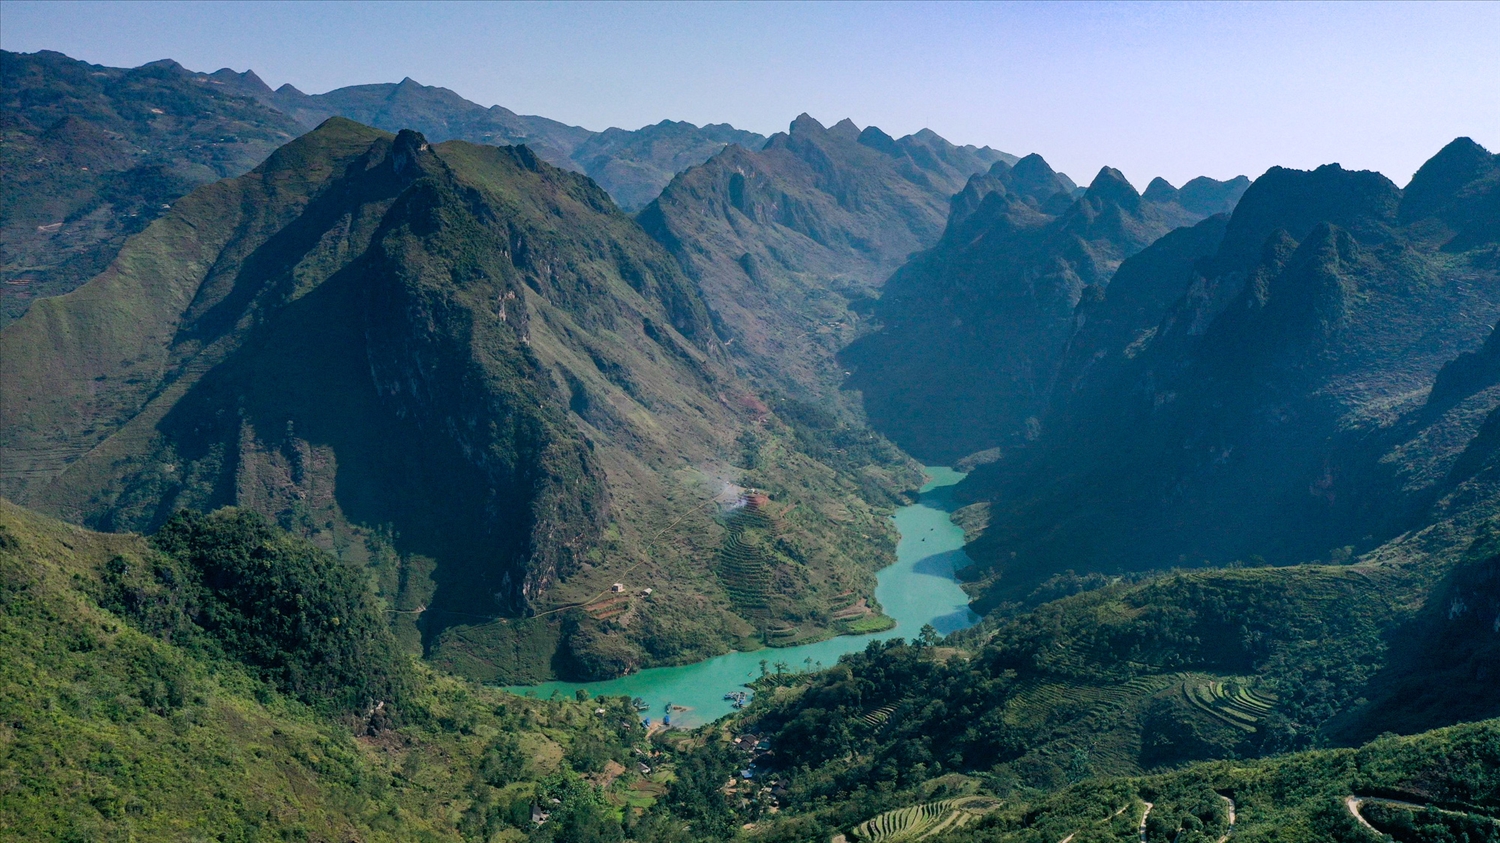 Hẻm vực Tu Sản nằm trong thung lũng có kiến tạo địa chất độc nhất vô nhị ở Việt Nam. Những năm gần đây, khu vực này mới được nhiều du khách biết đến